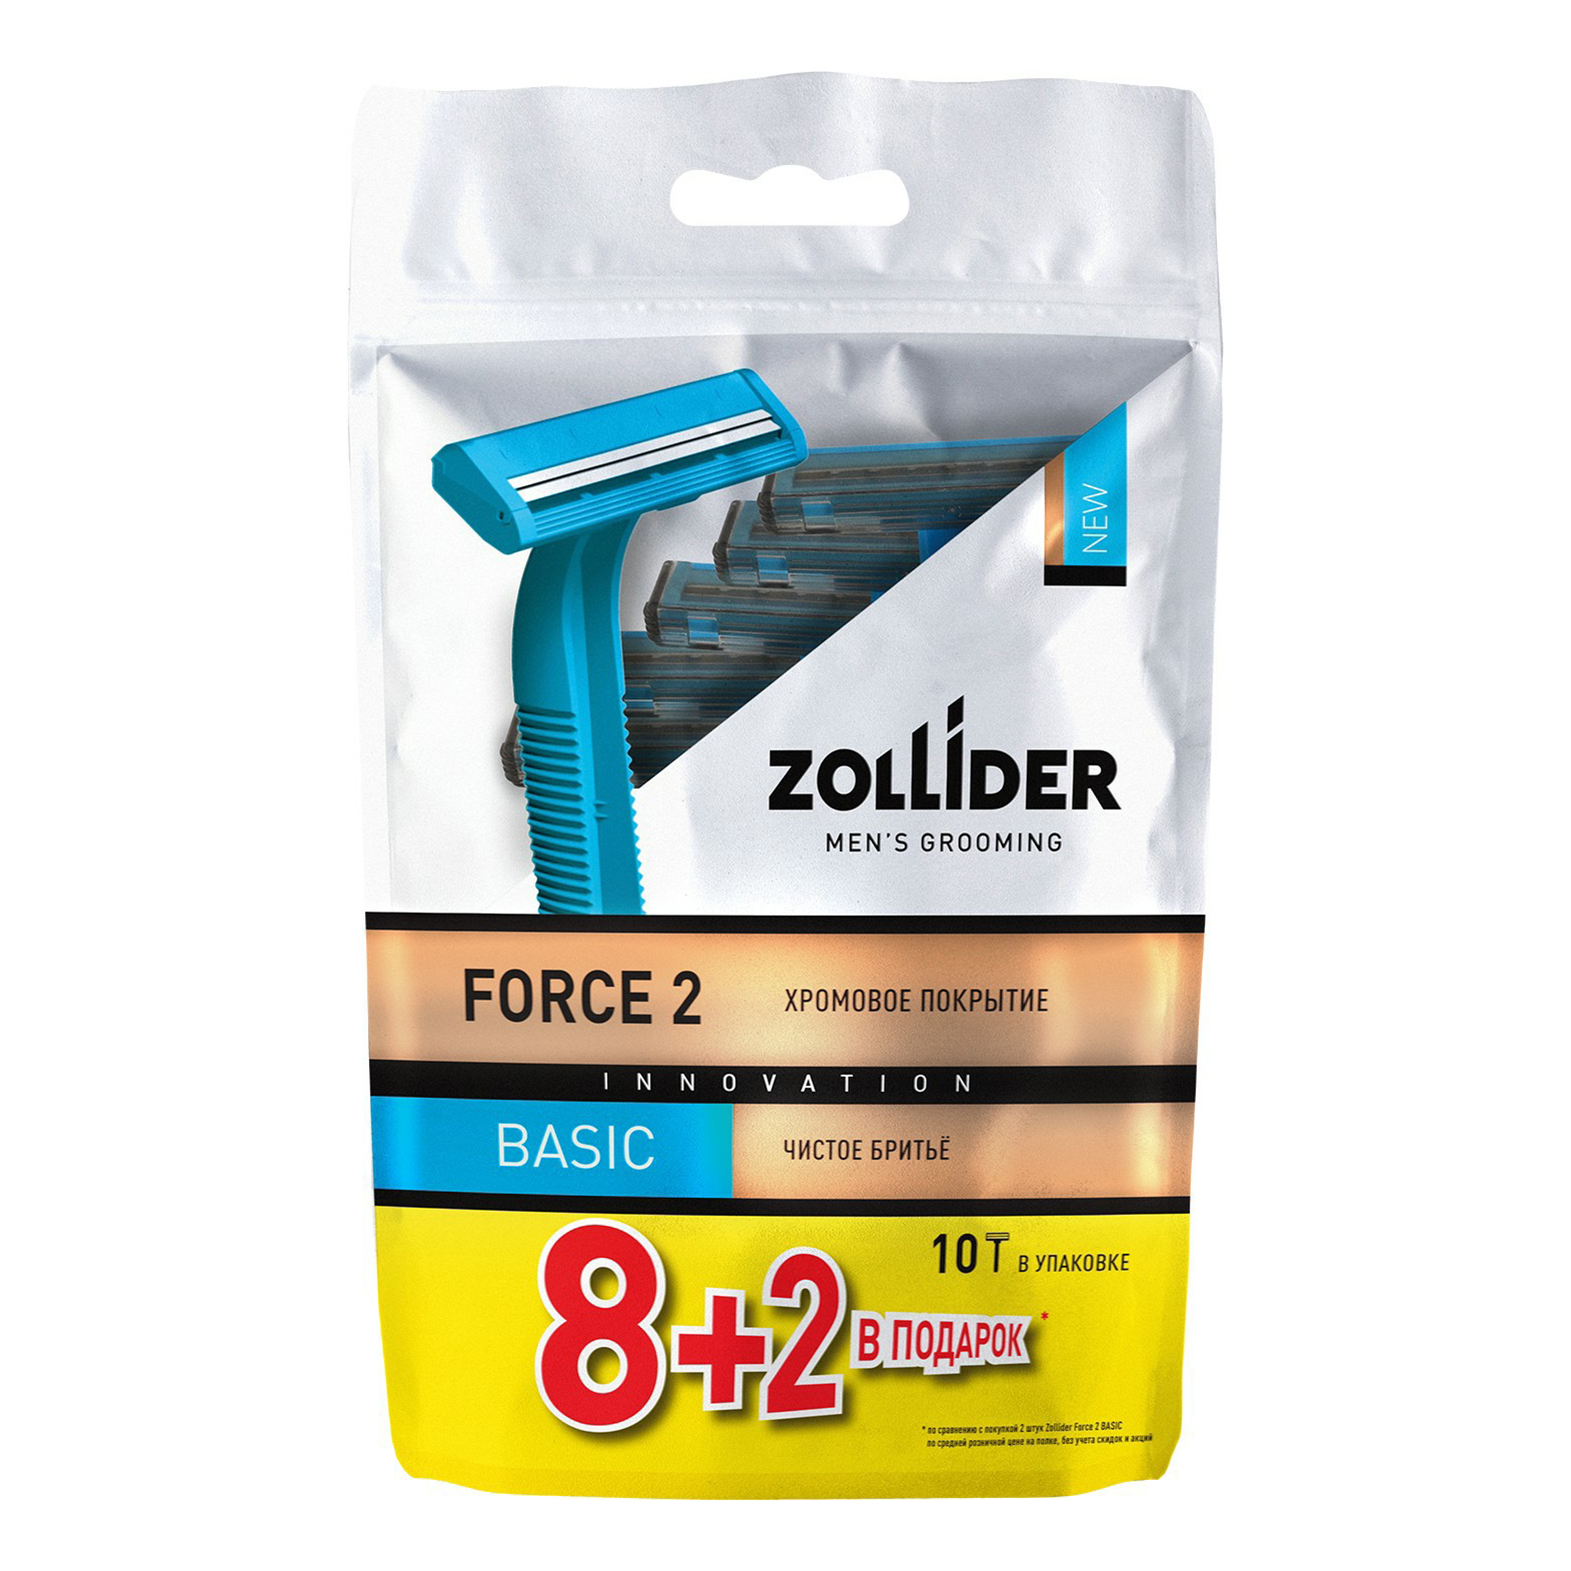 Бритвенные станки мужские Zollider Force 2 Basic одноразовые с двойными лезвиями 8 + 2 шт